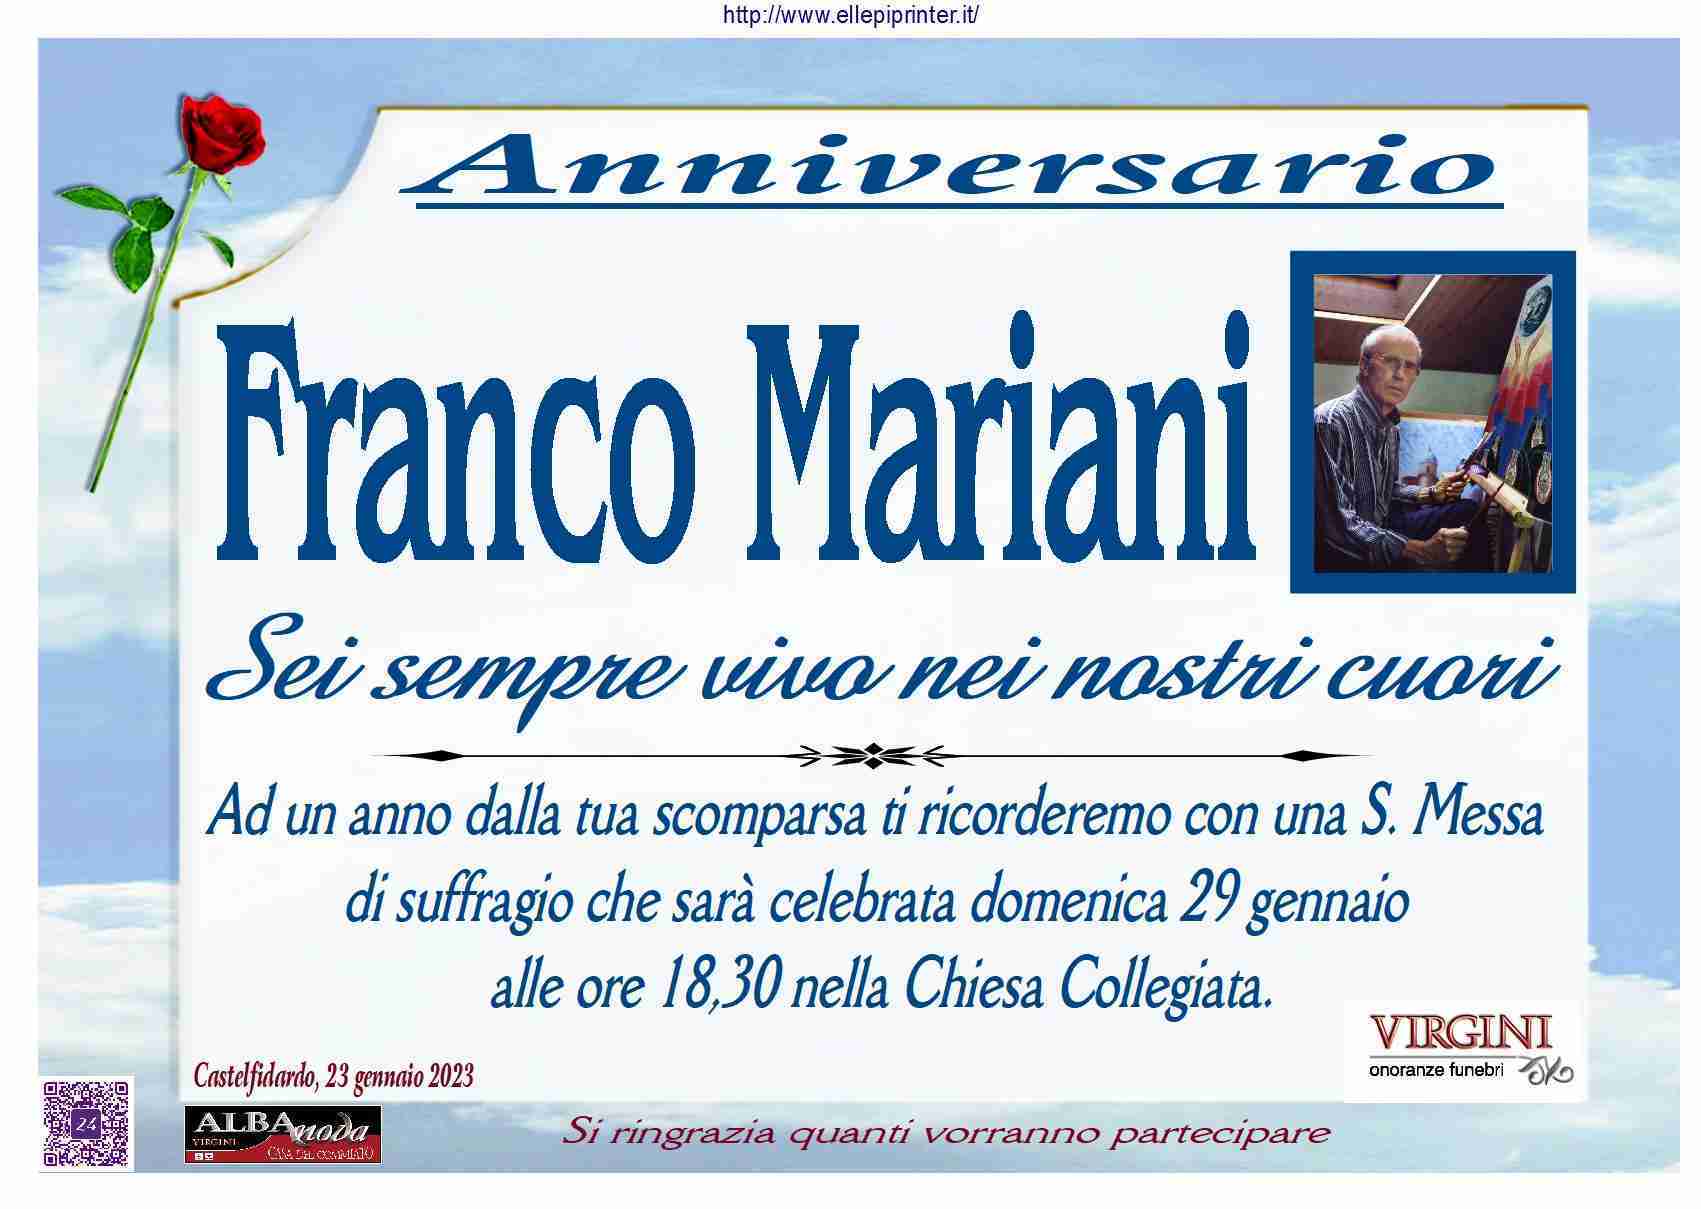 Franco Mariani